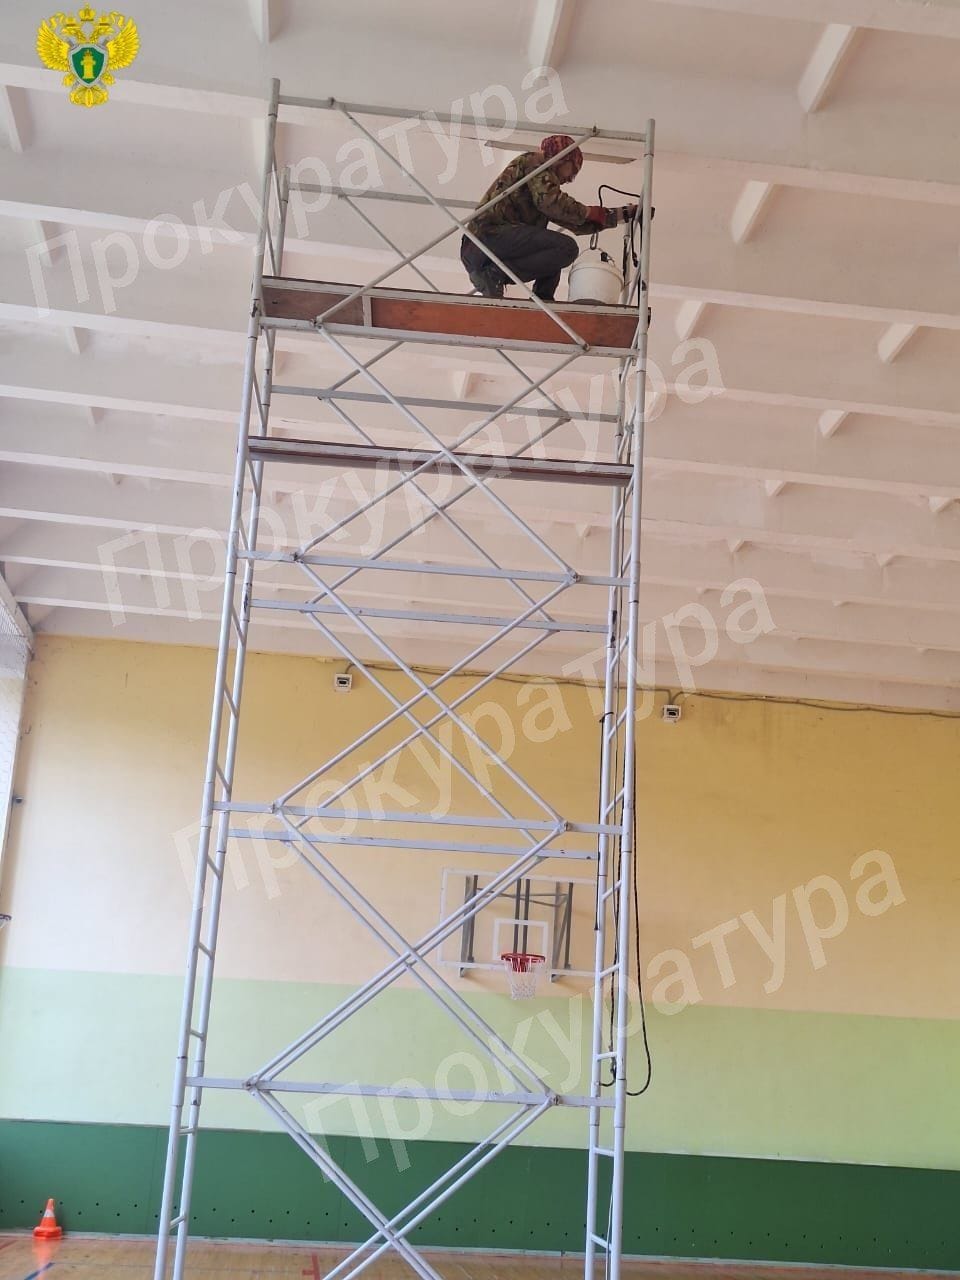 После прокурорского вмешательства отремонтирован потолок в МБОУ «Центр образования № 25»